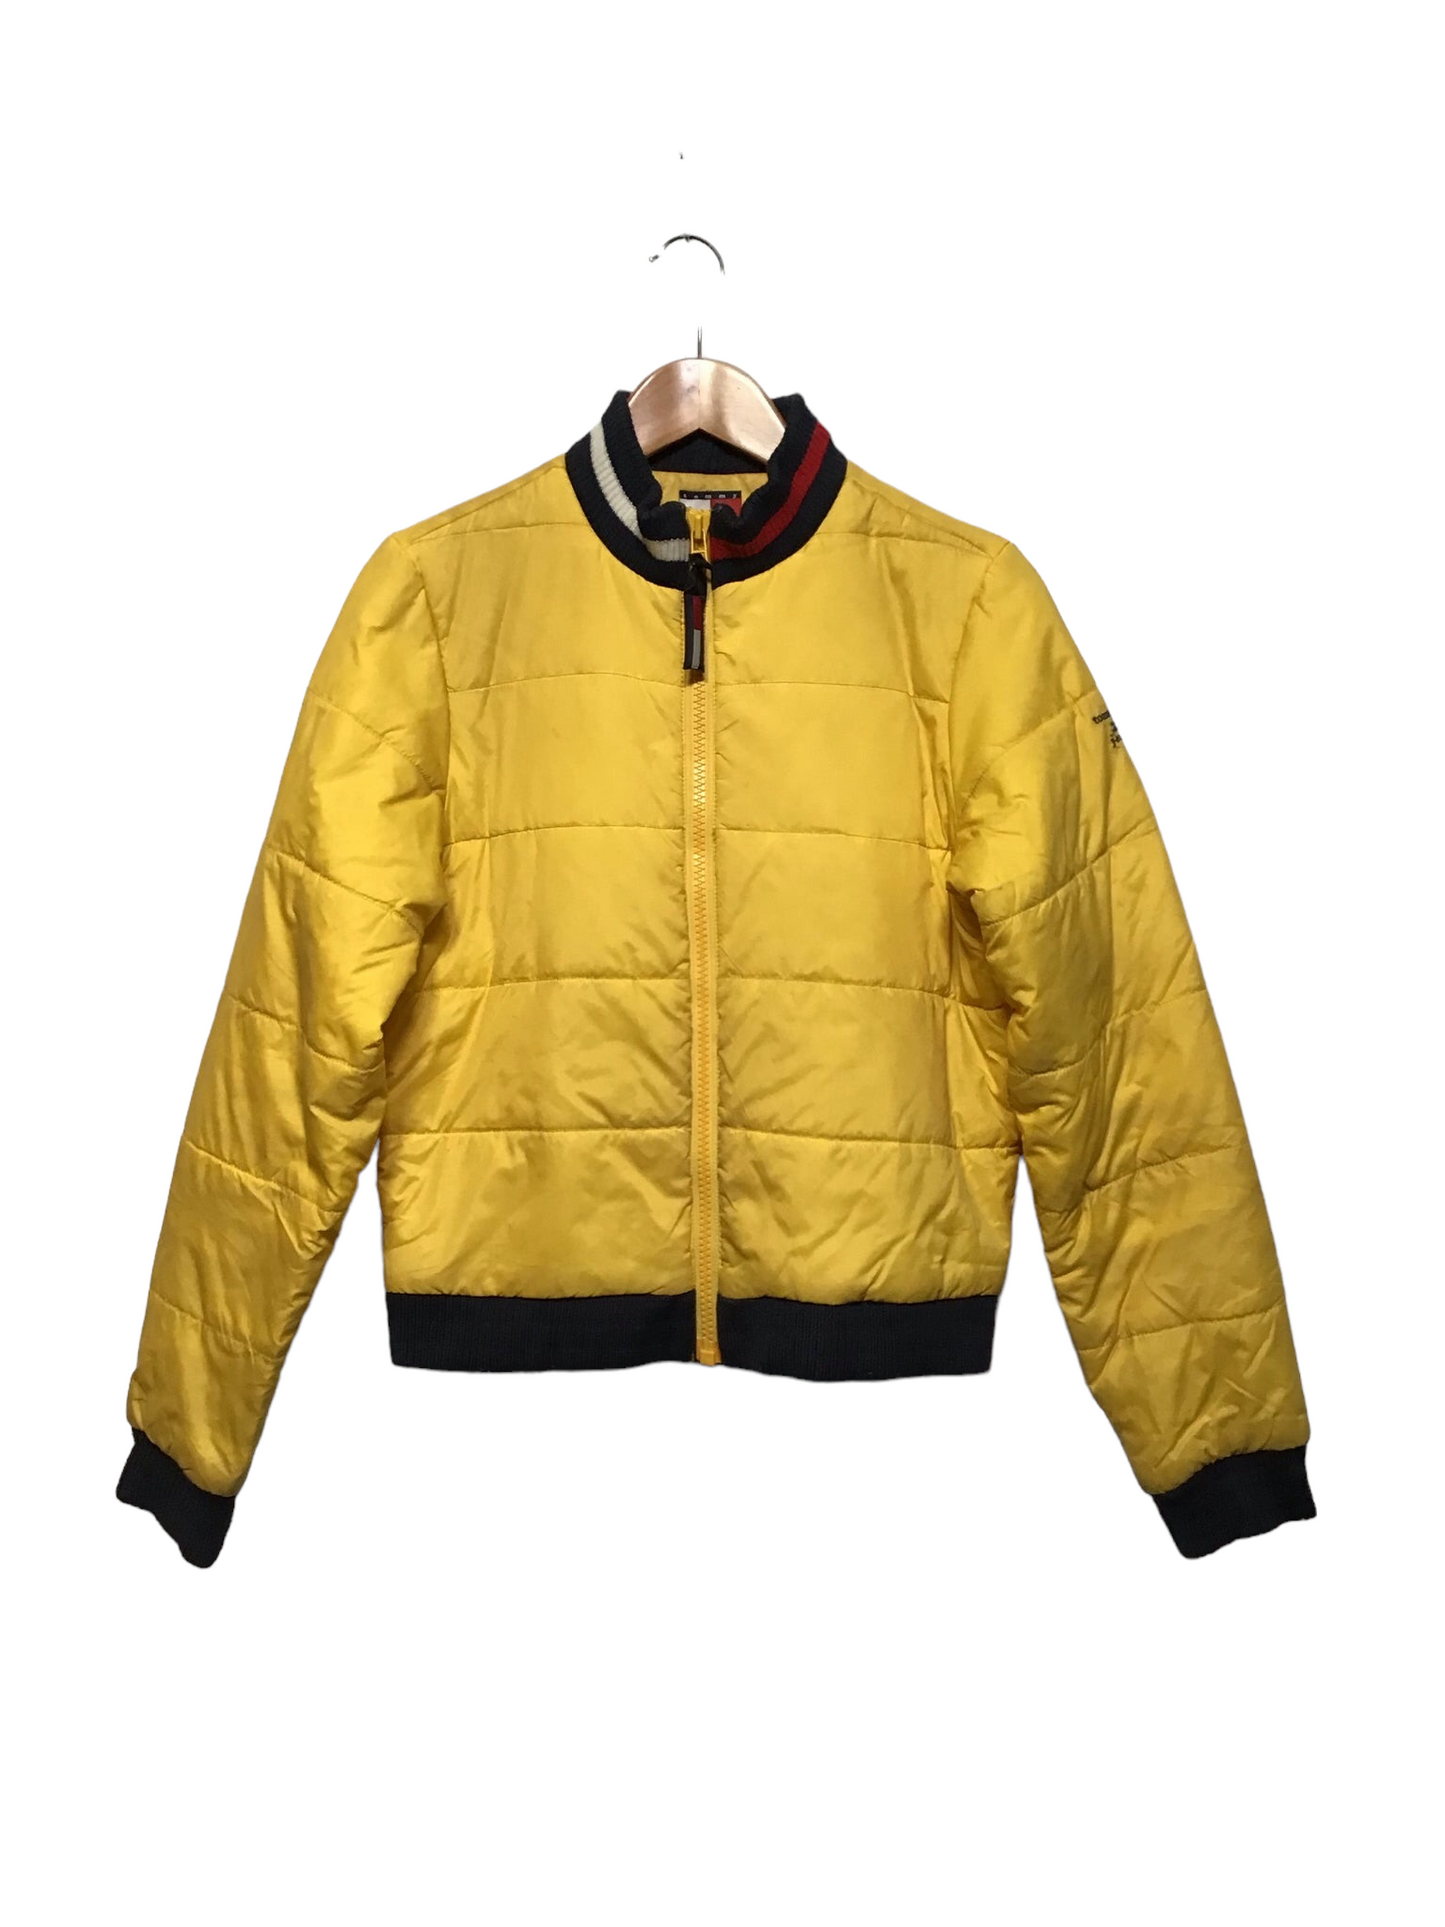 Tommy Hilfiger Yellow Puffer Jacket (Size M)